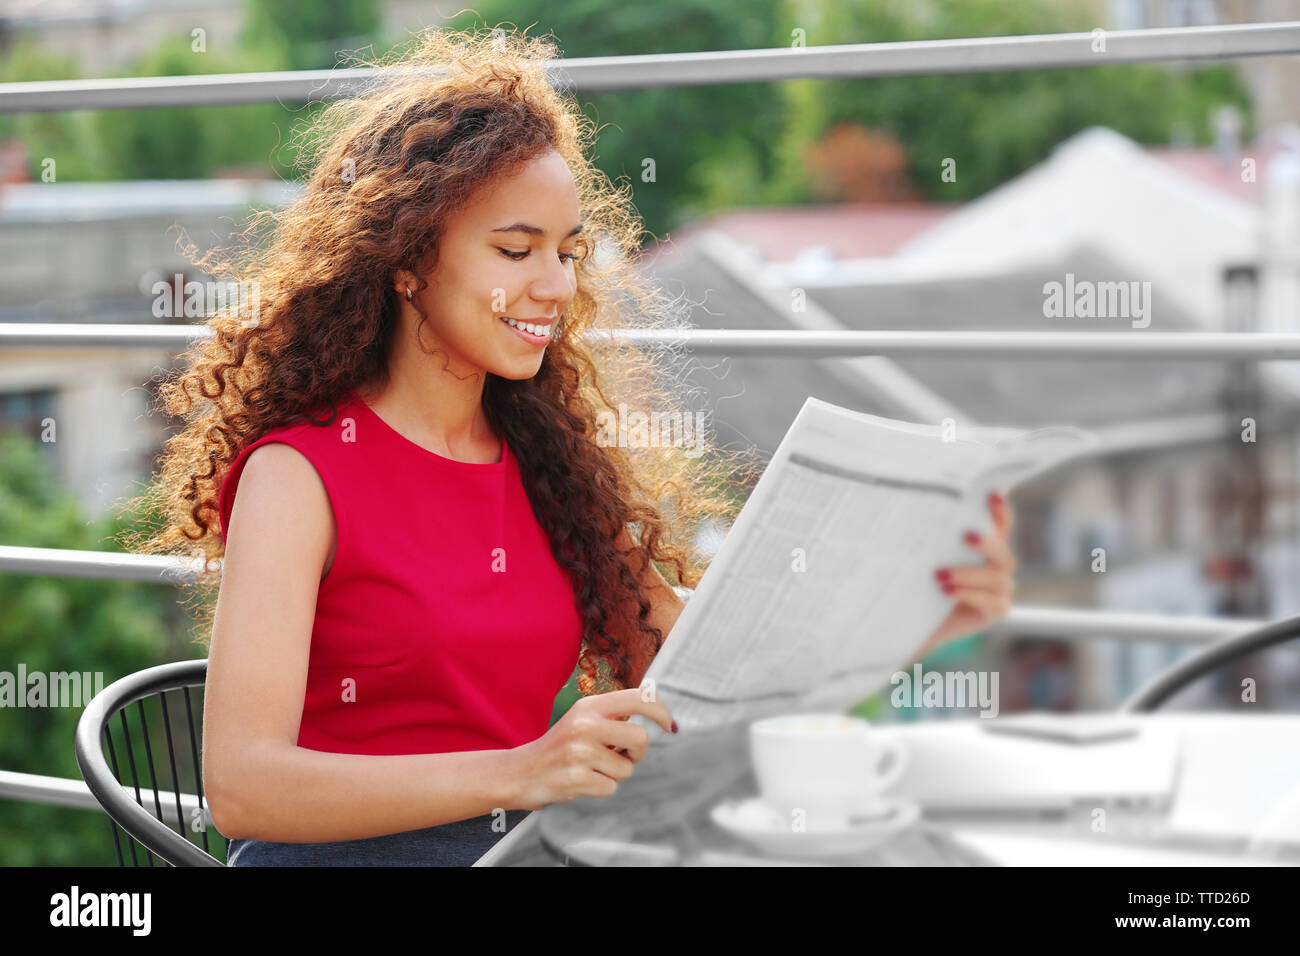 Ritratto di giovane donna graziosa in abito rosso lettura quotidiano a terrazza estiva Foto Stock